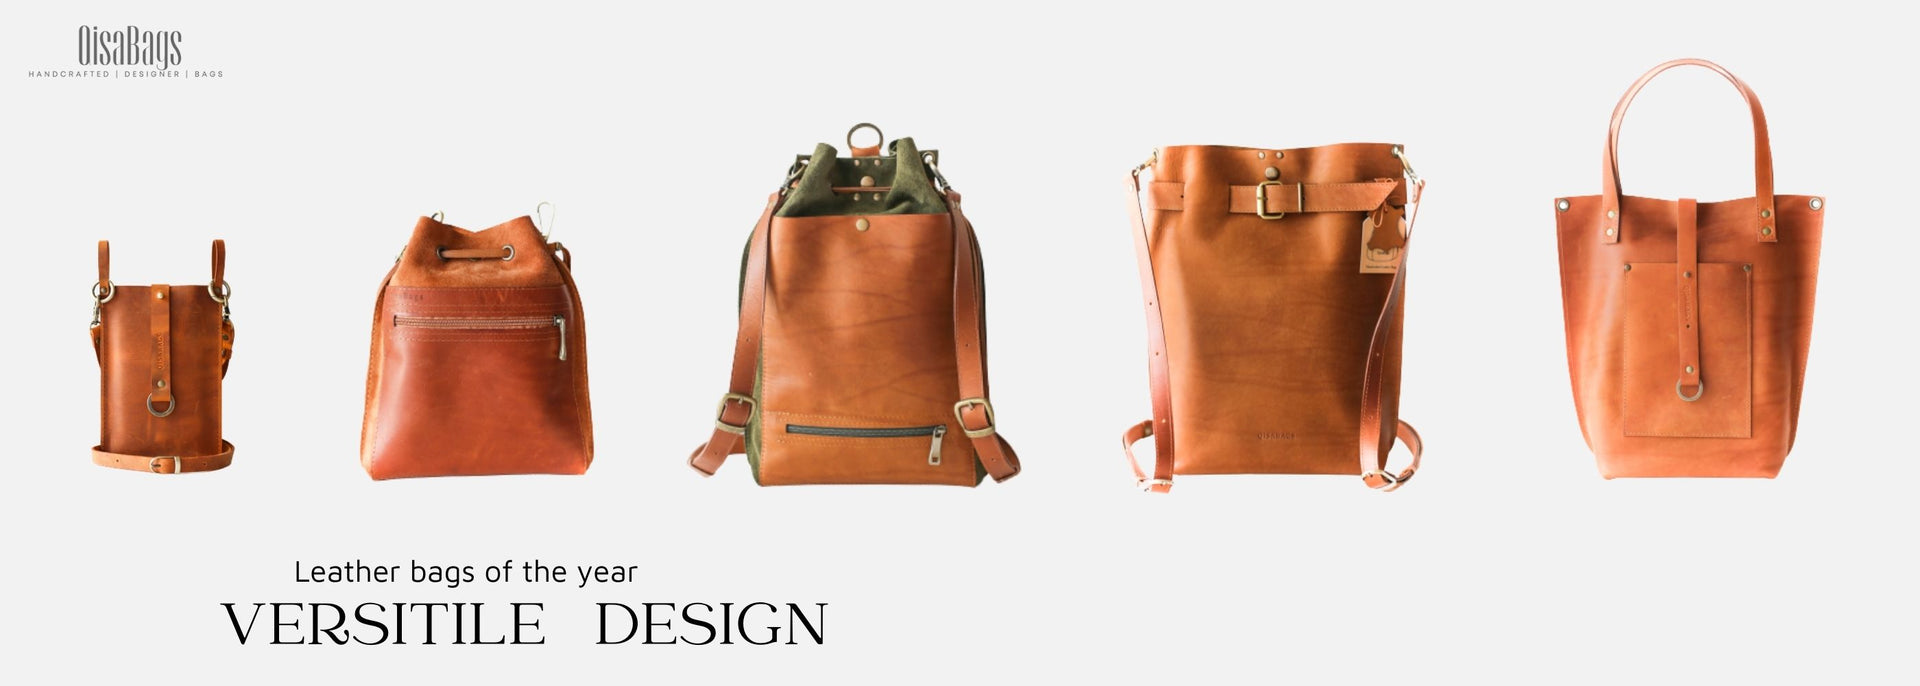 Designer Leather Backpacks For Women